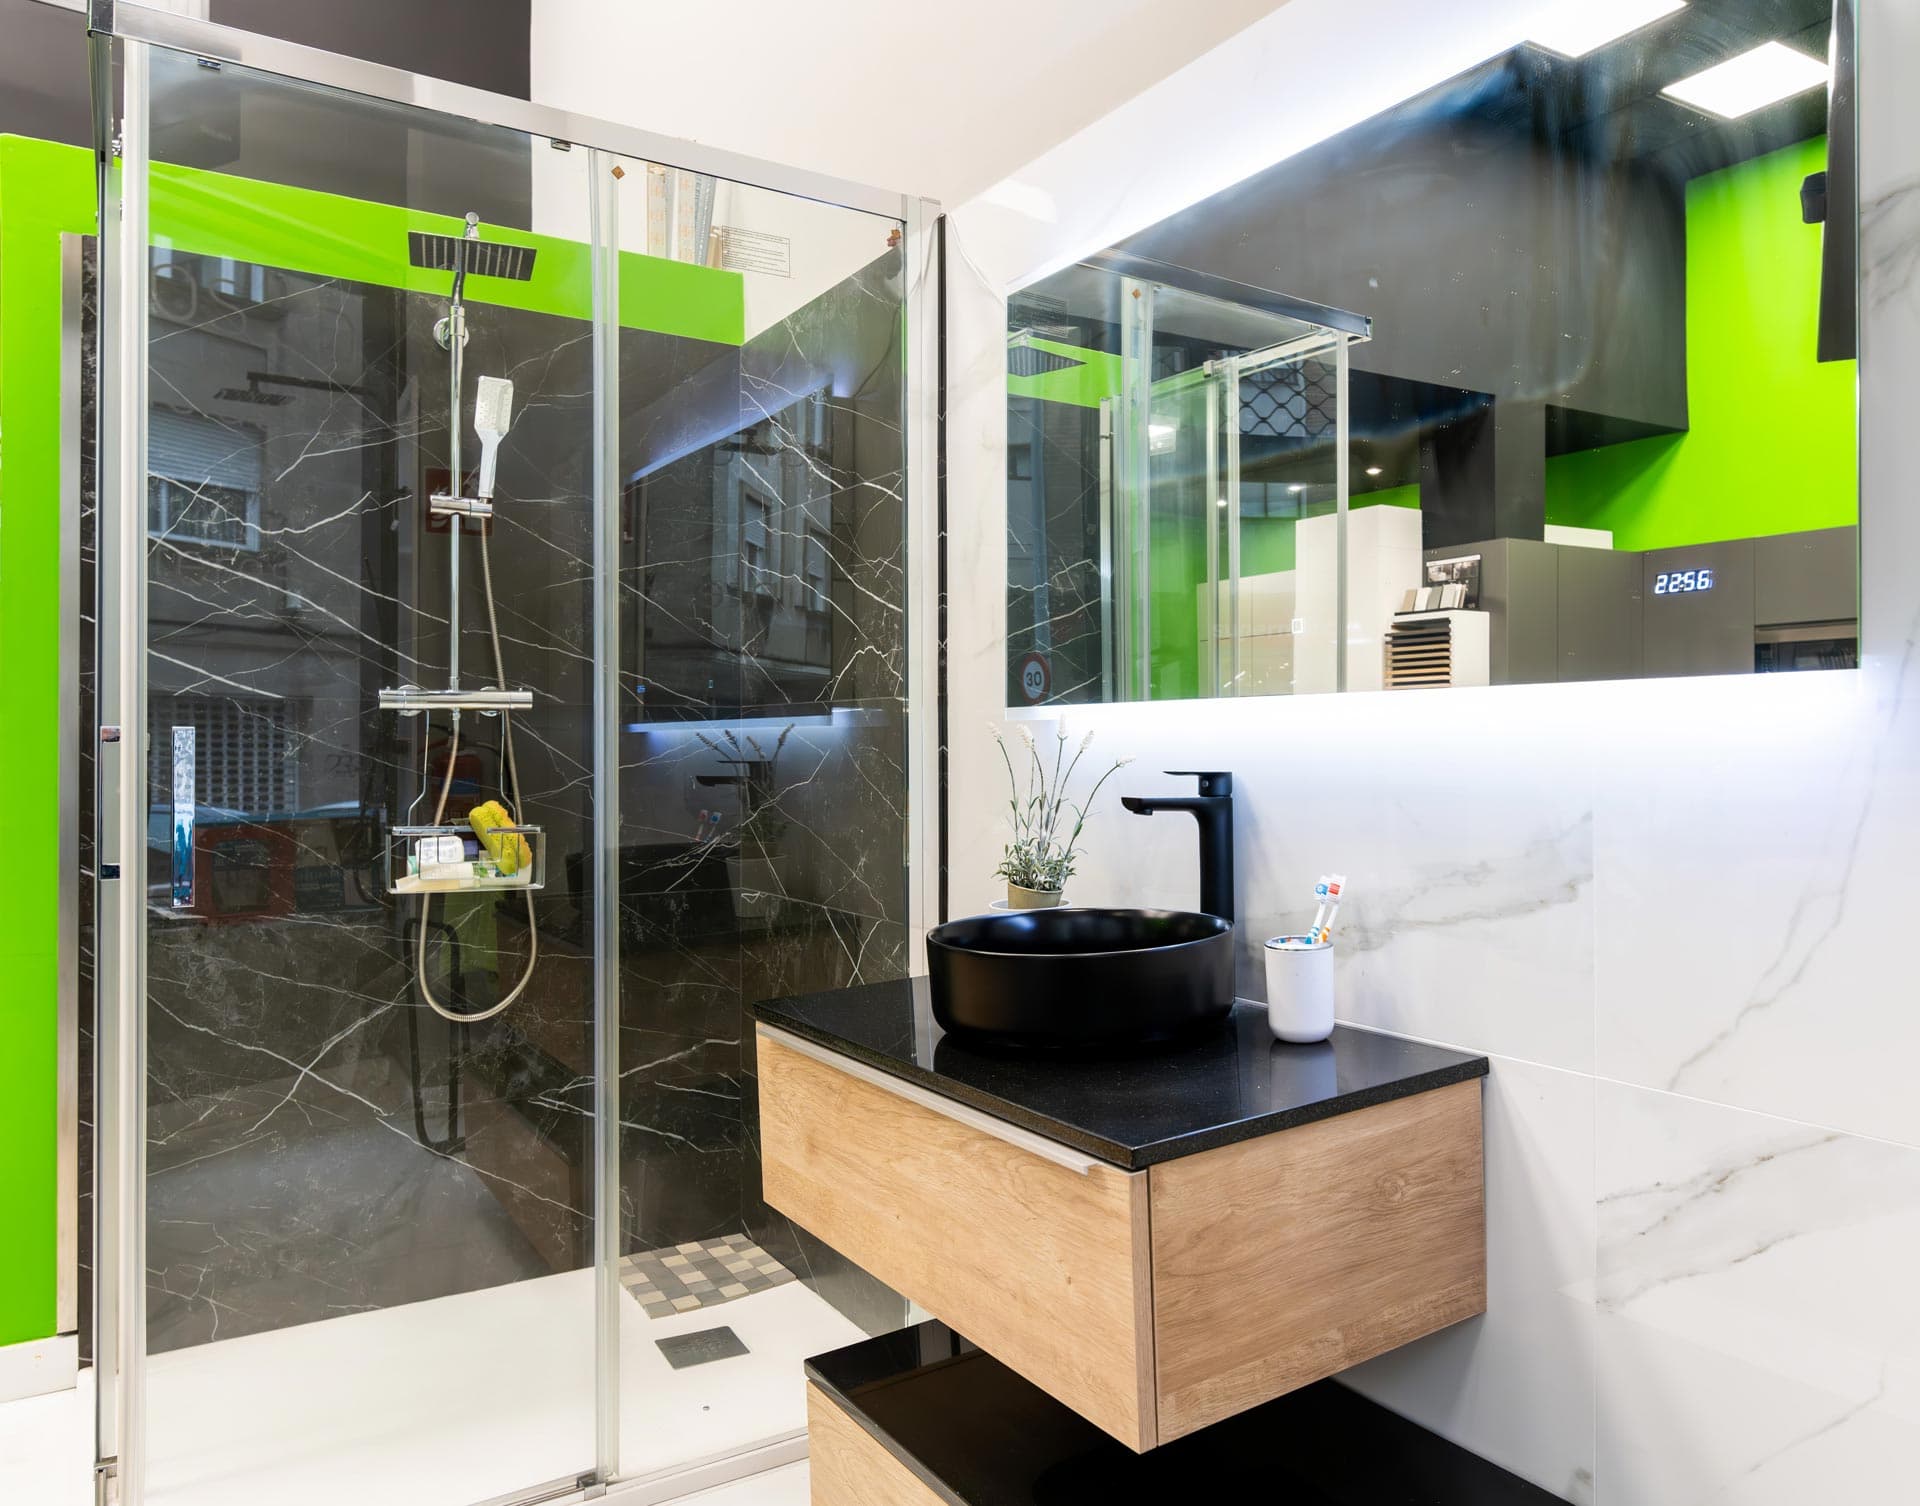 Reformas de baños en Vigo